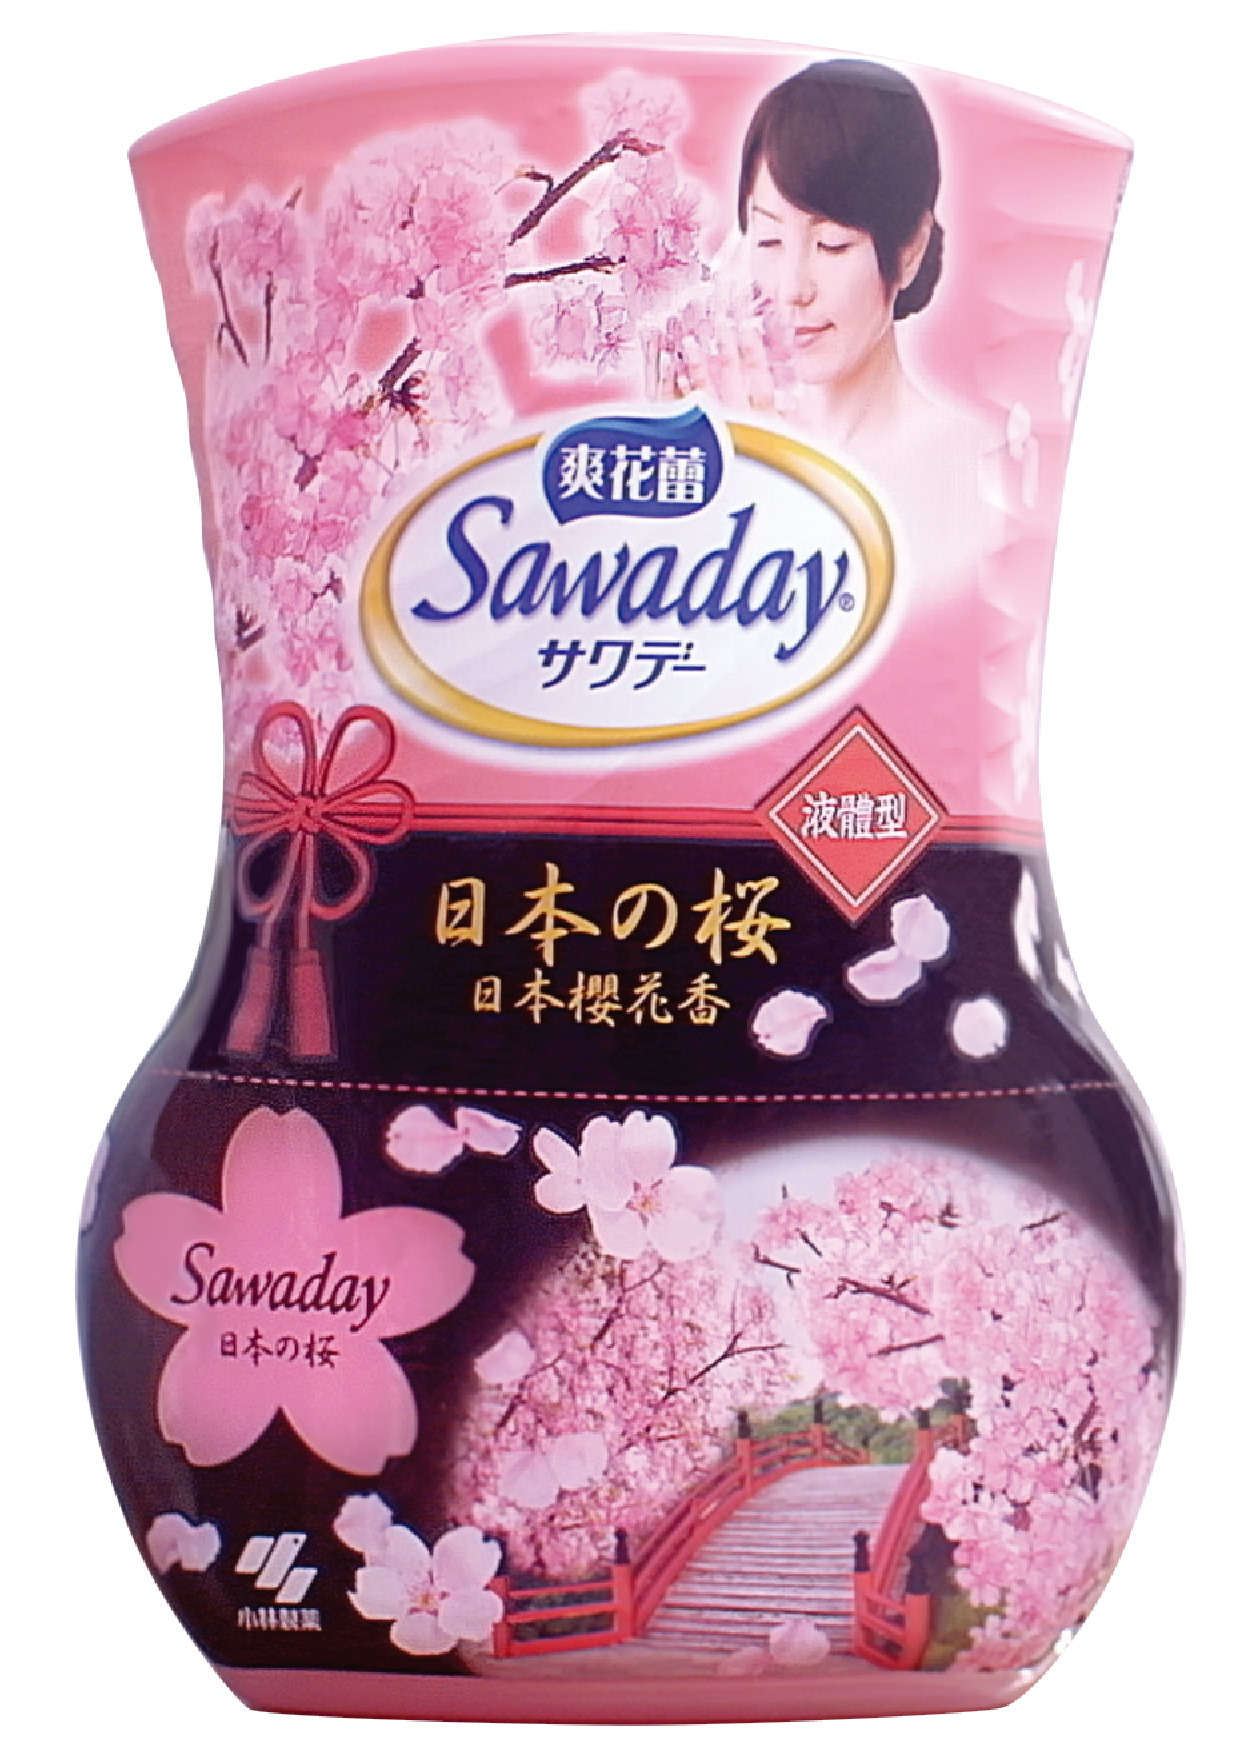 日本櫻花香及抺茶香的爽花蕾香座